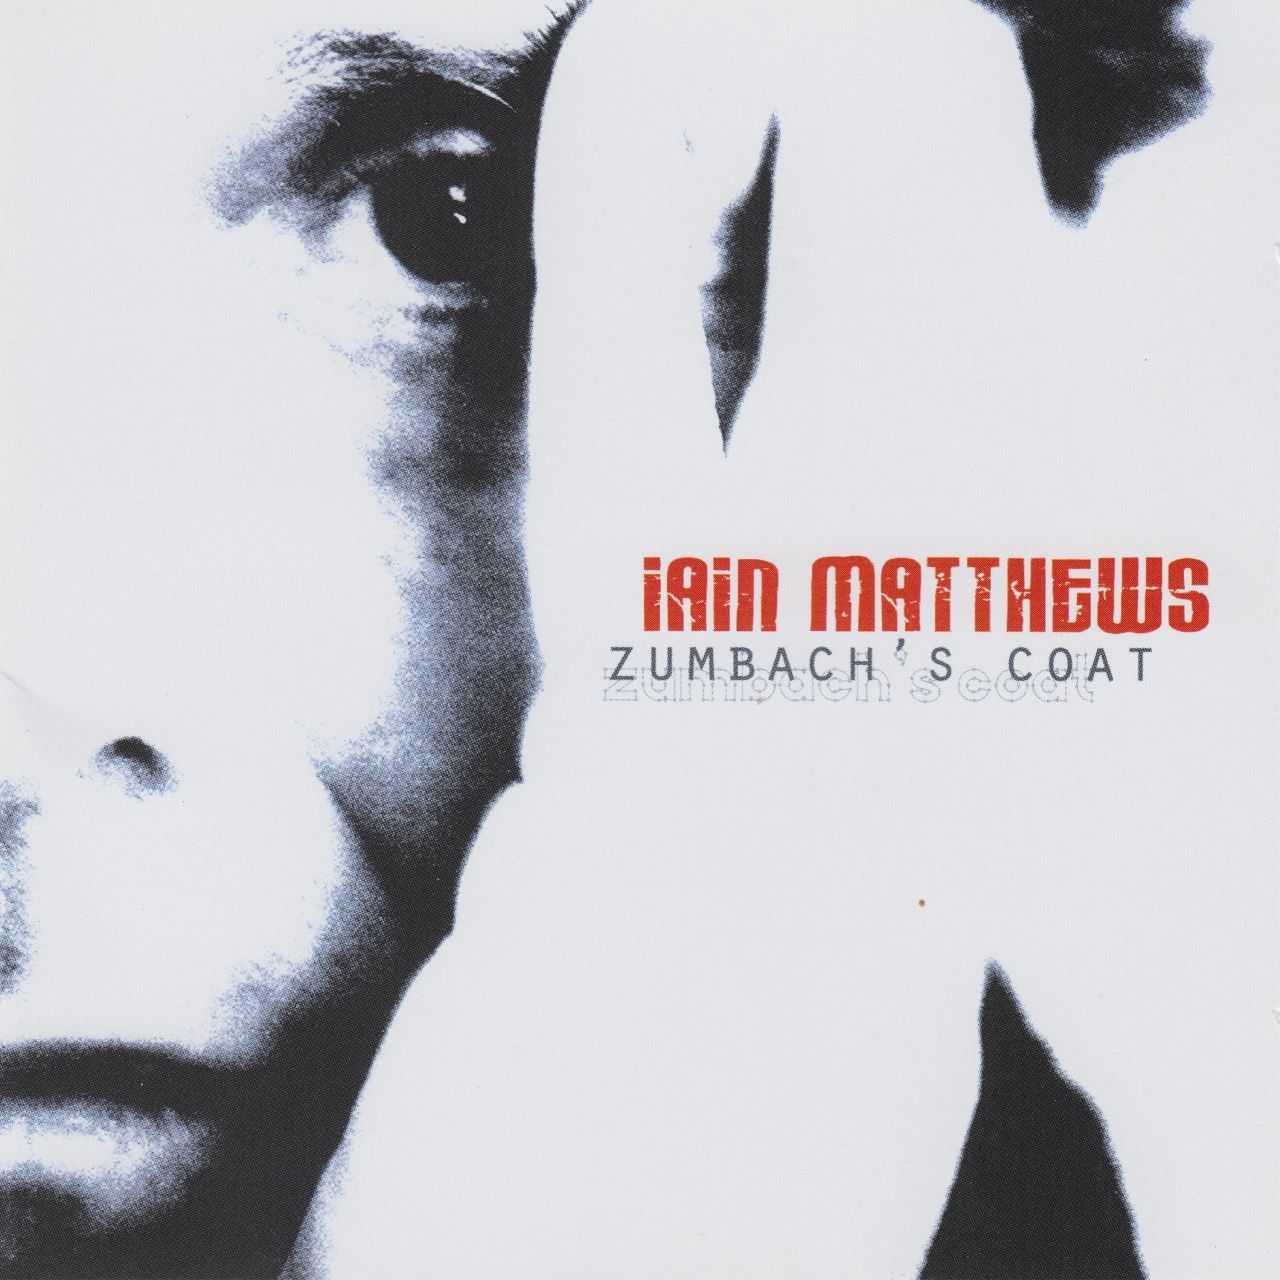 Iain Matthews - Zumbach’s Coat cover album